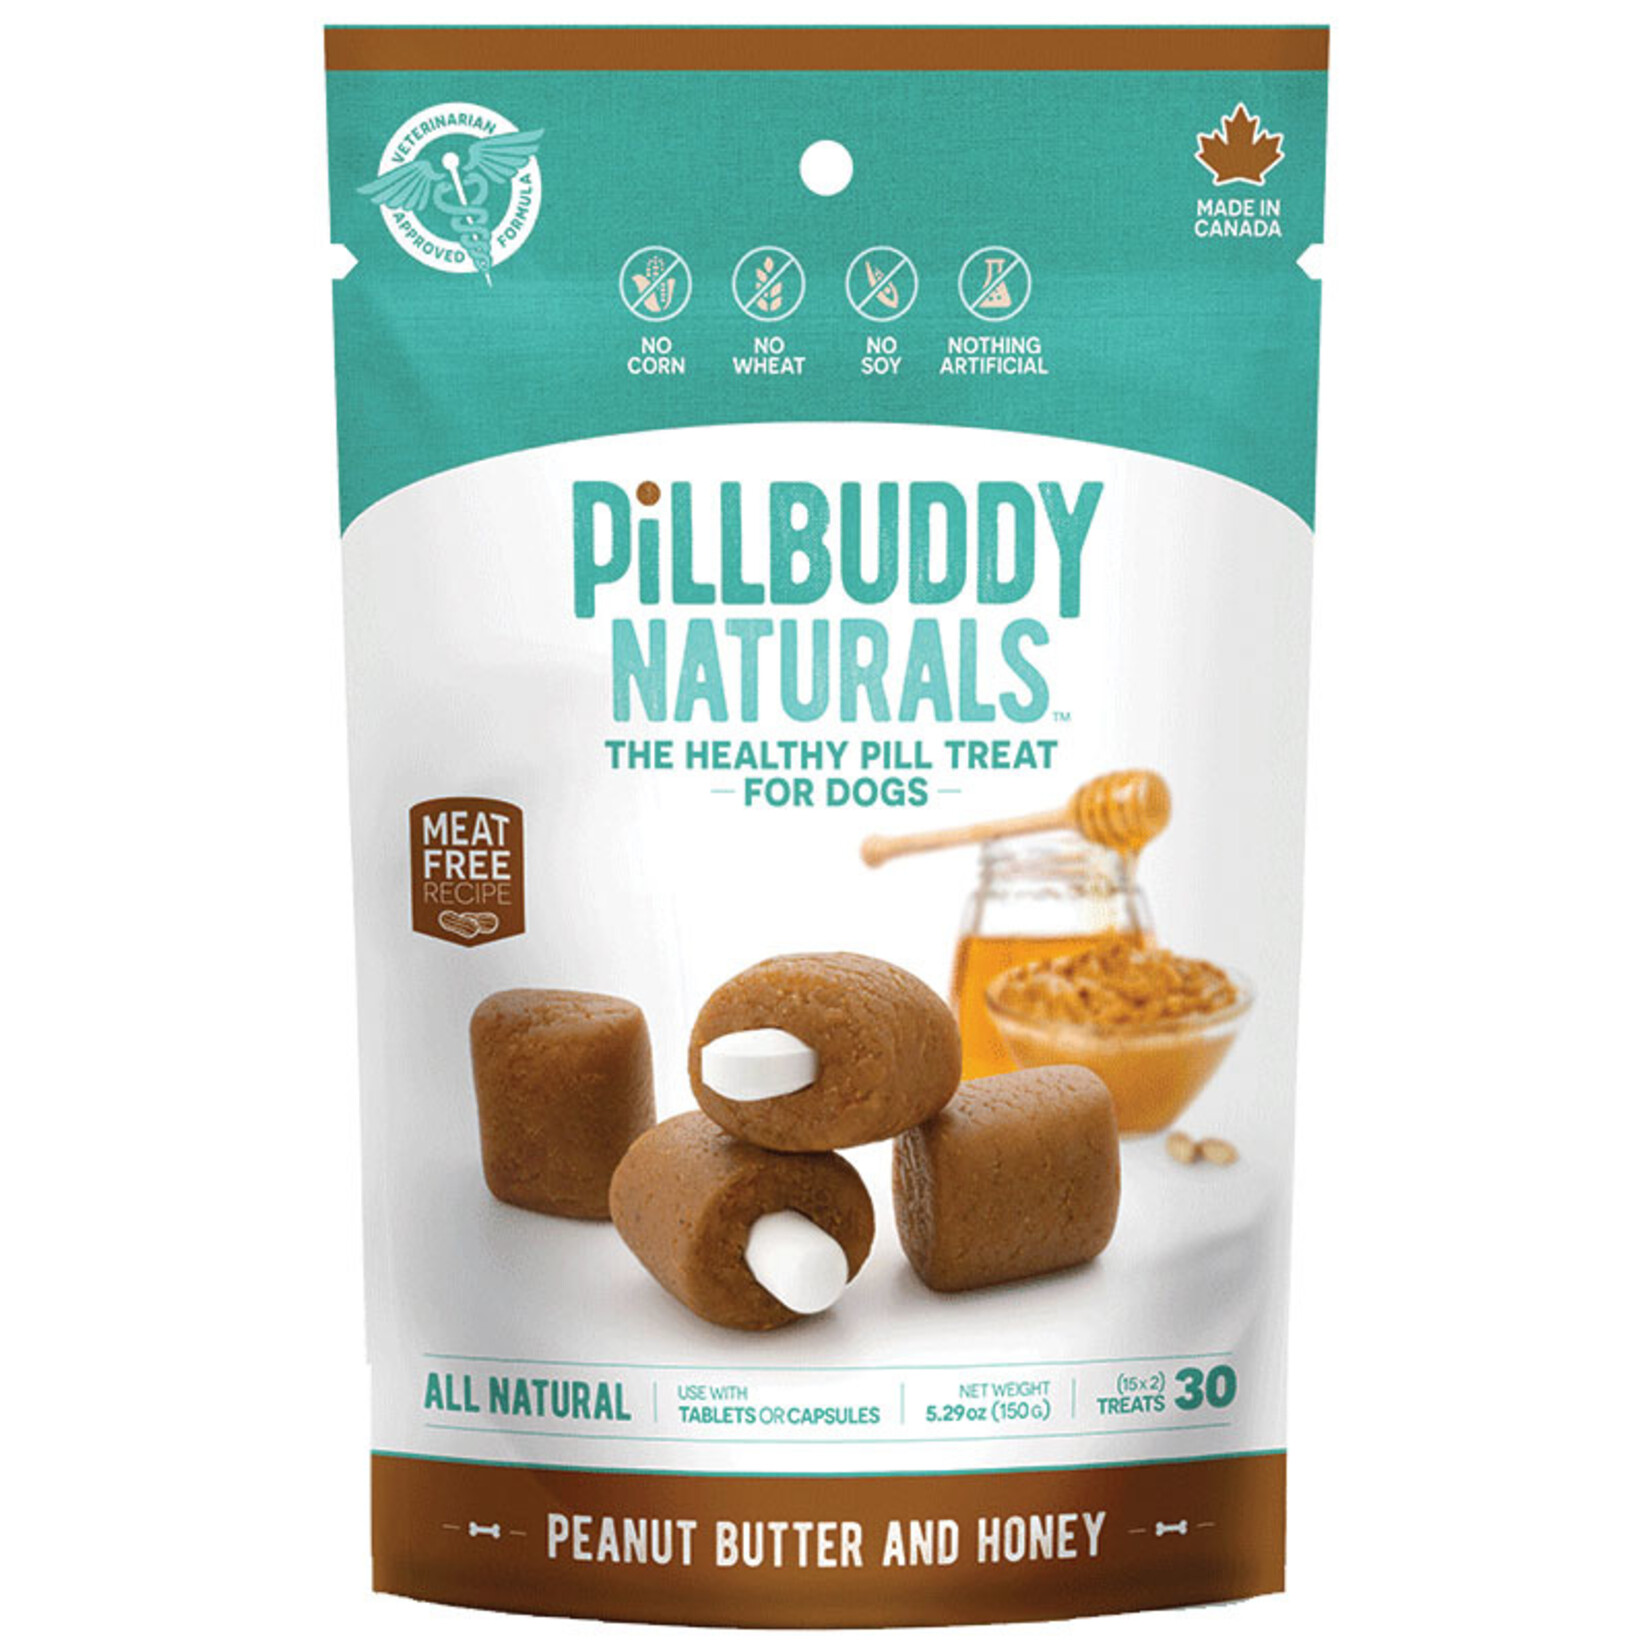 150g Pill Buddy Naturals Peanut Butter and Honey Recipe